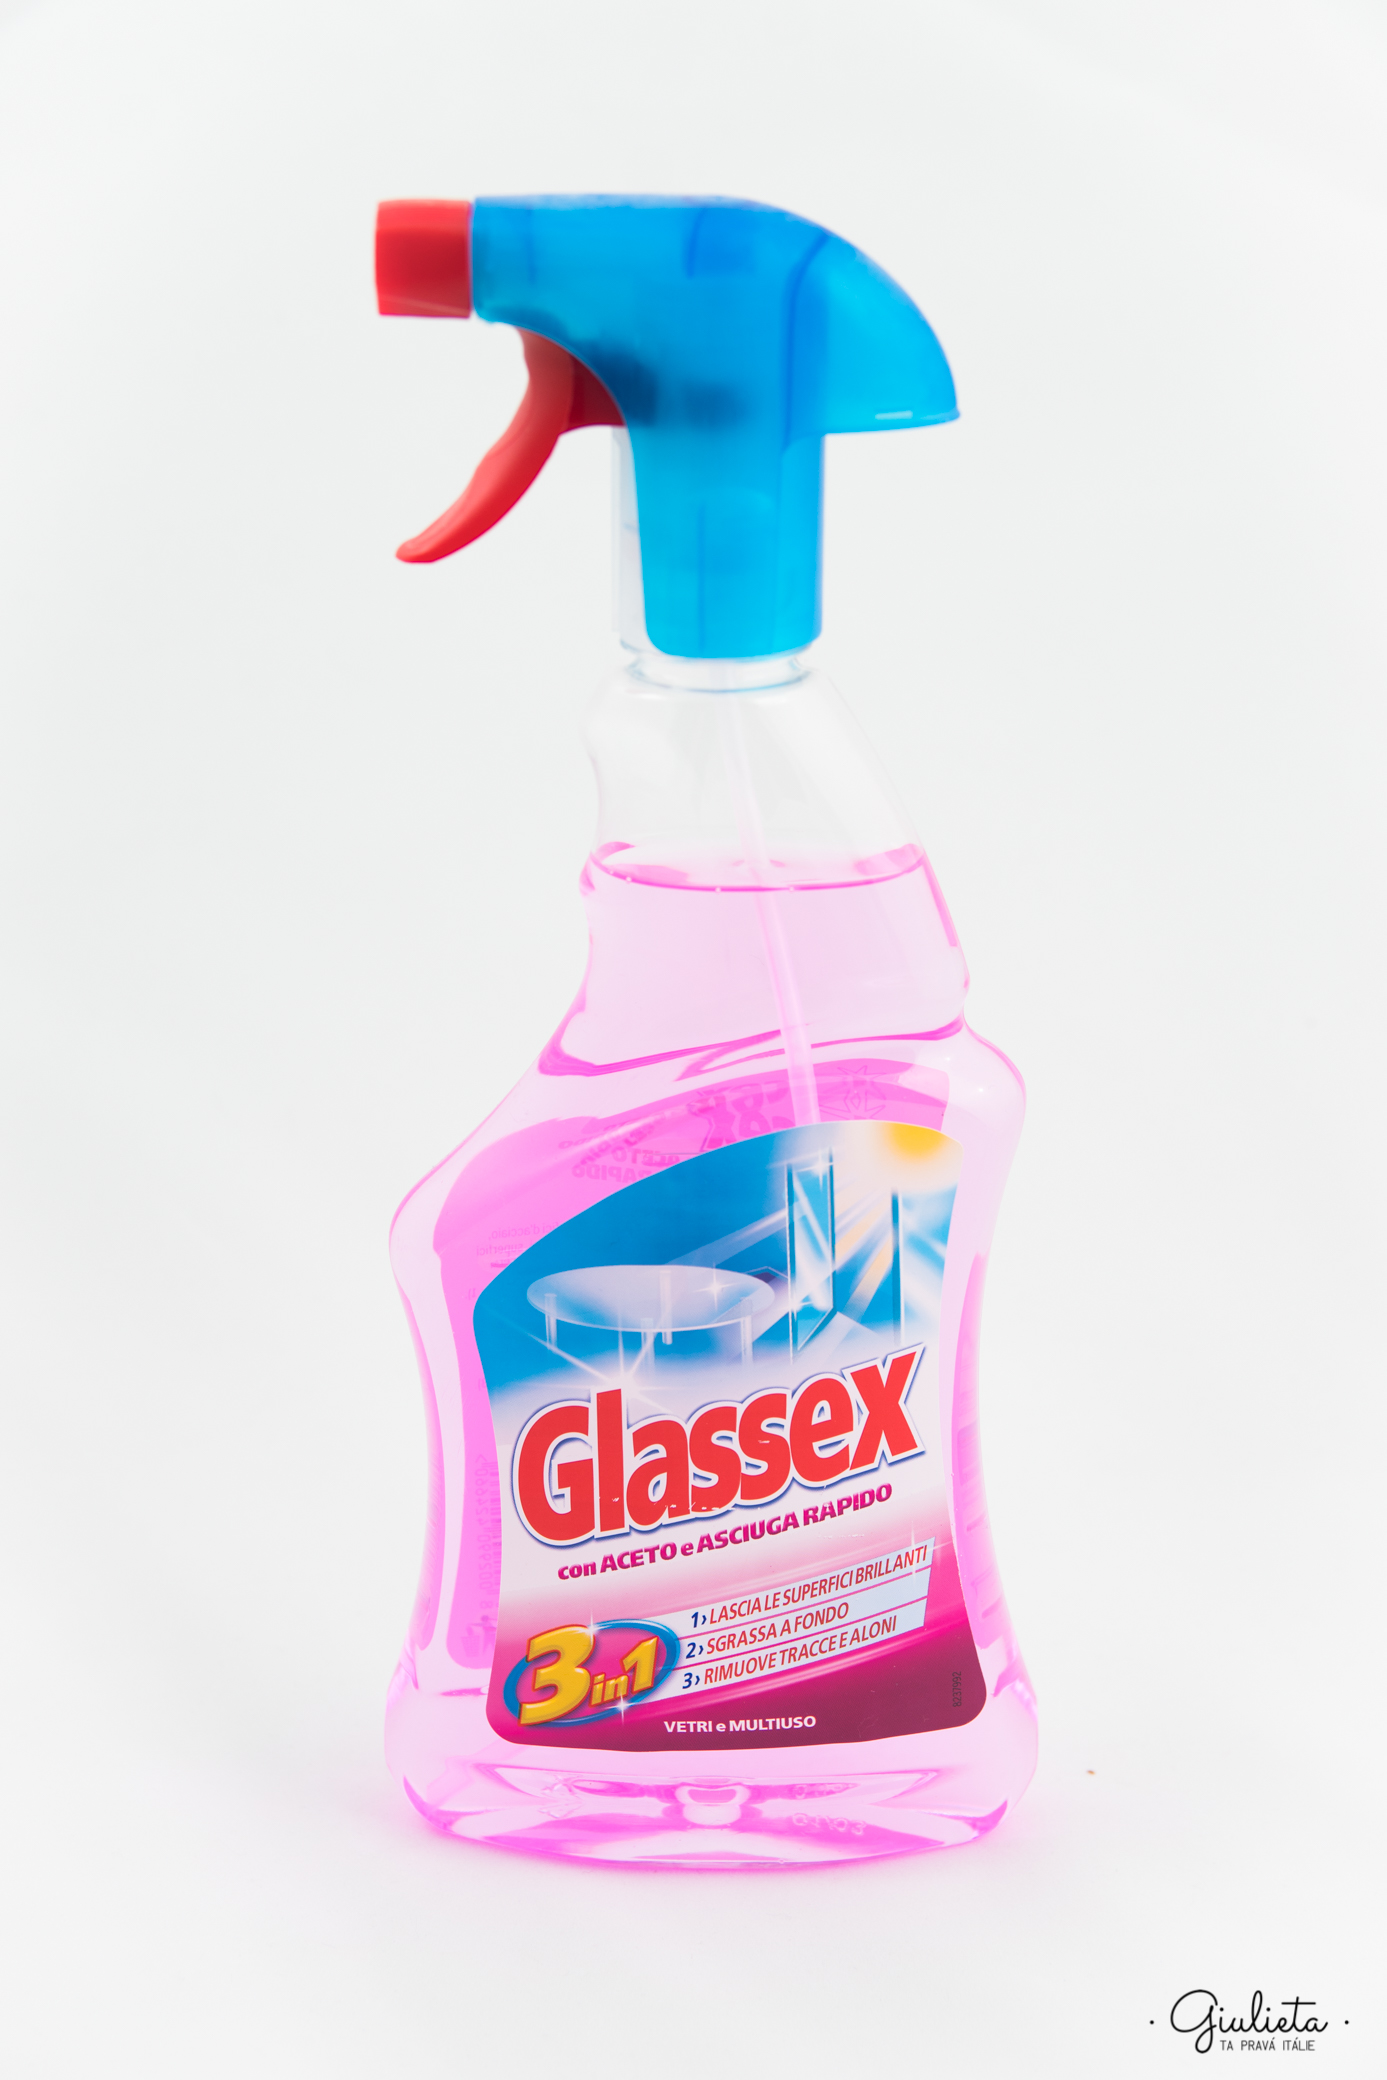 Glassex čisticí prostředek con Aceto e Asciuga Rapido s rozprašovačem, 500 ml